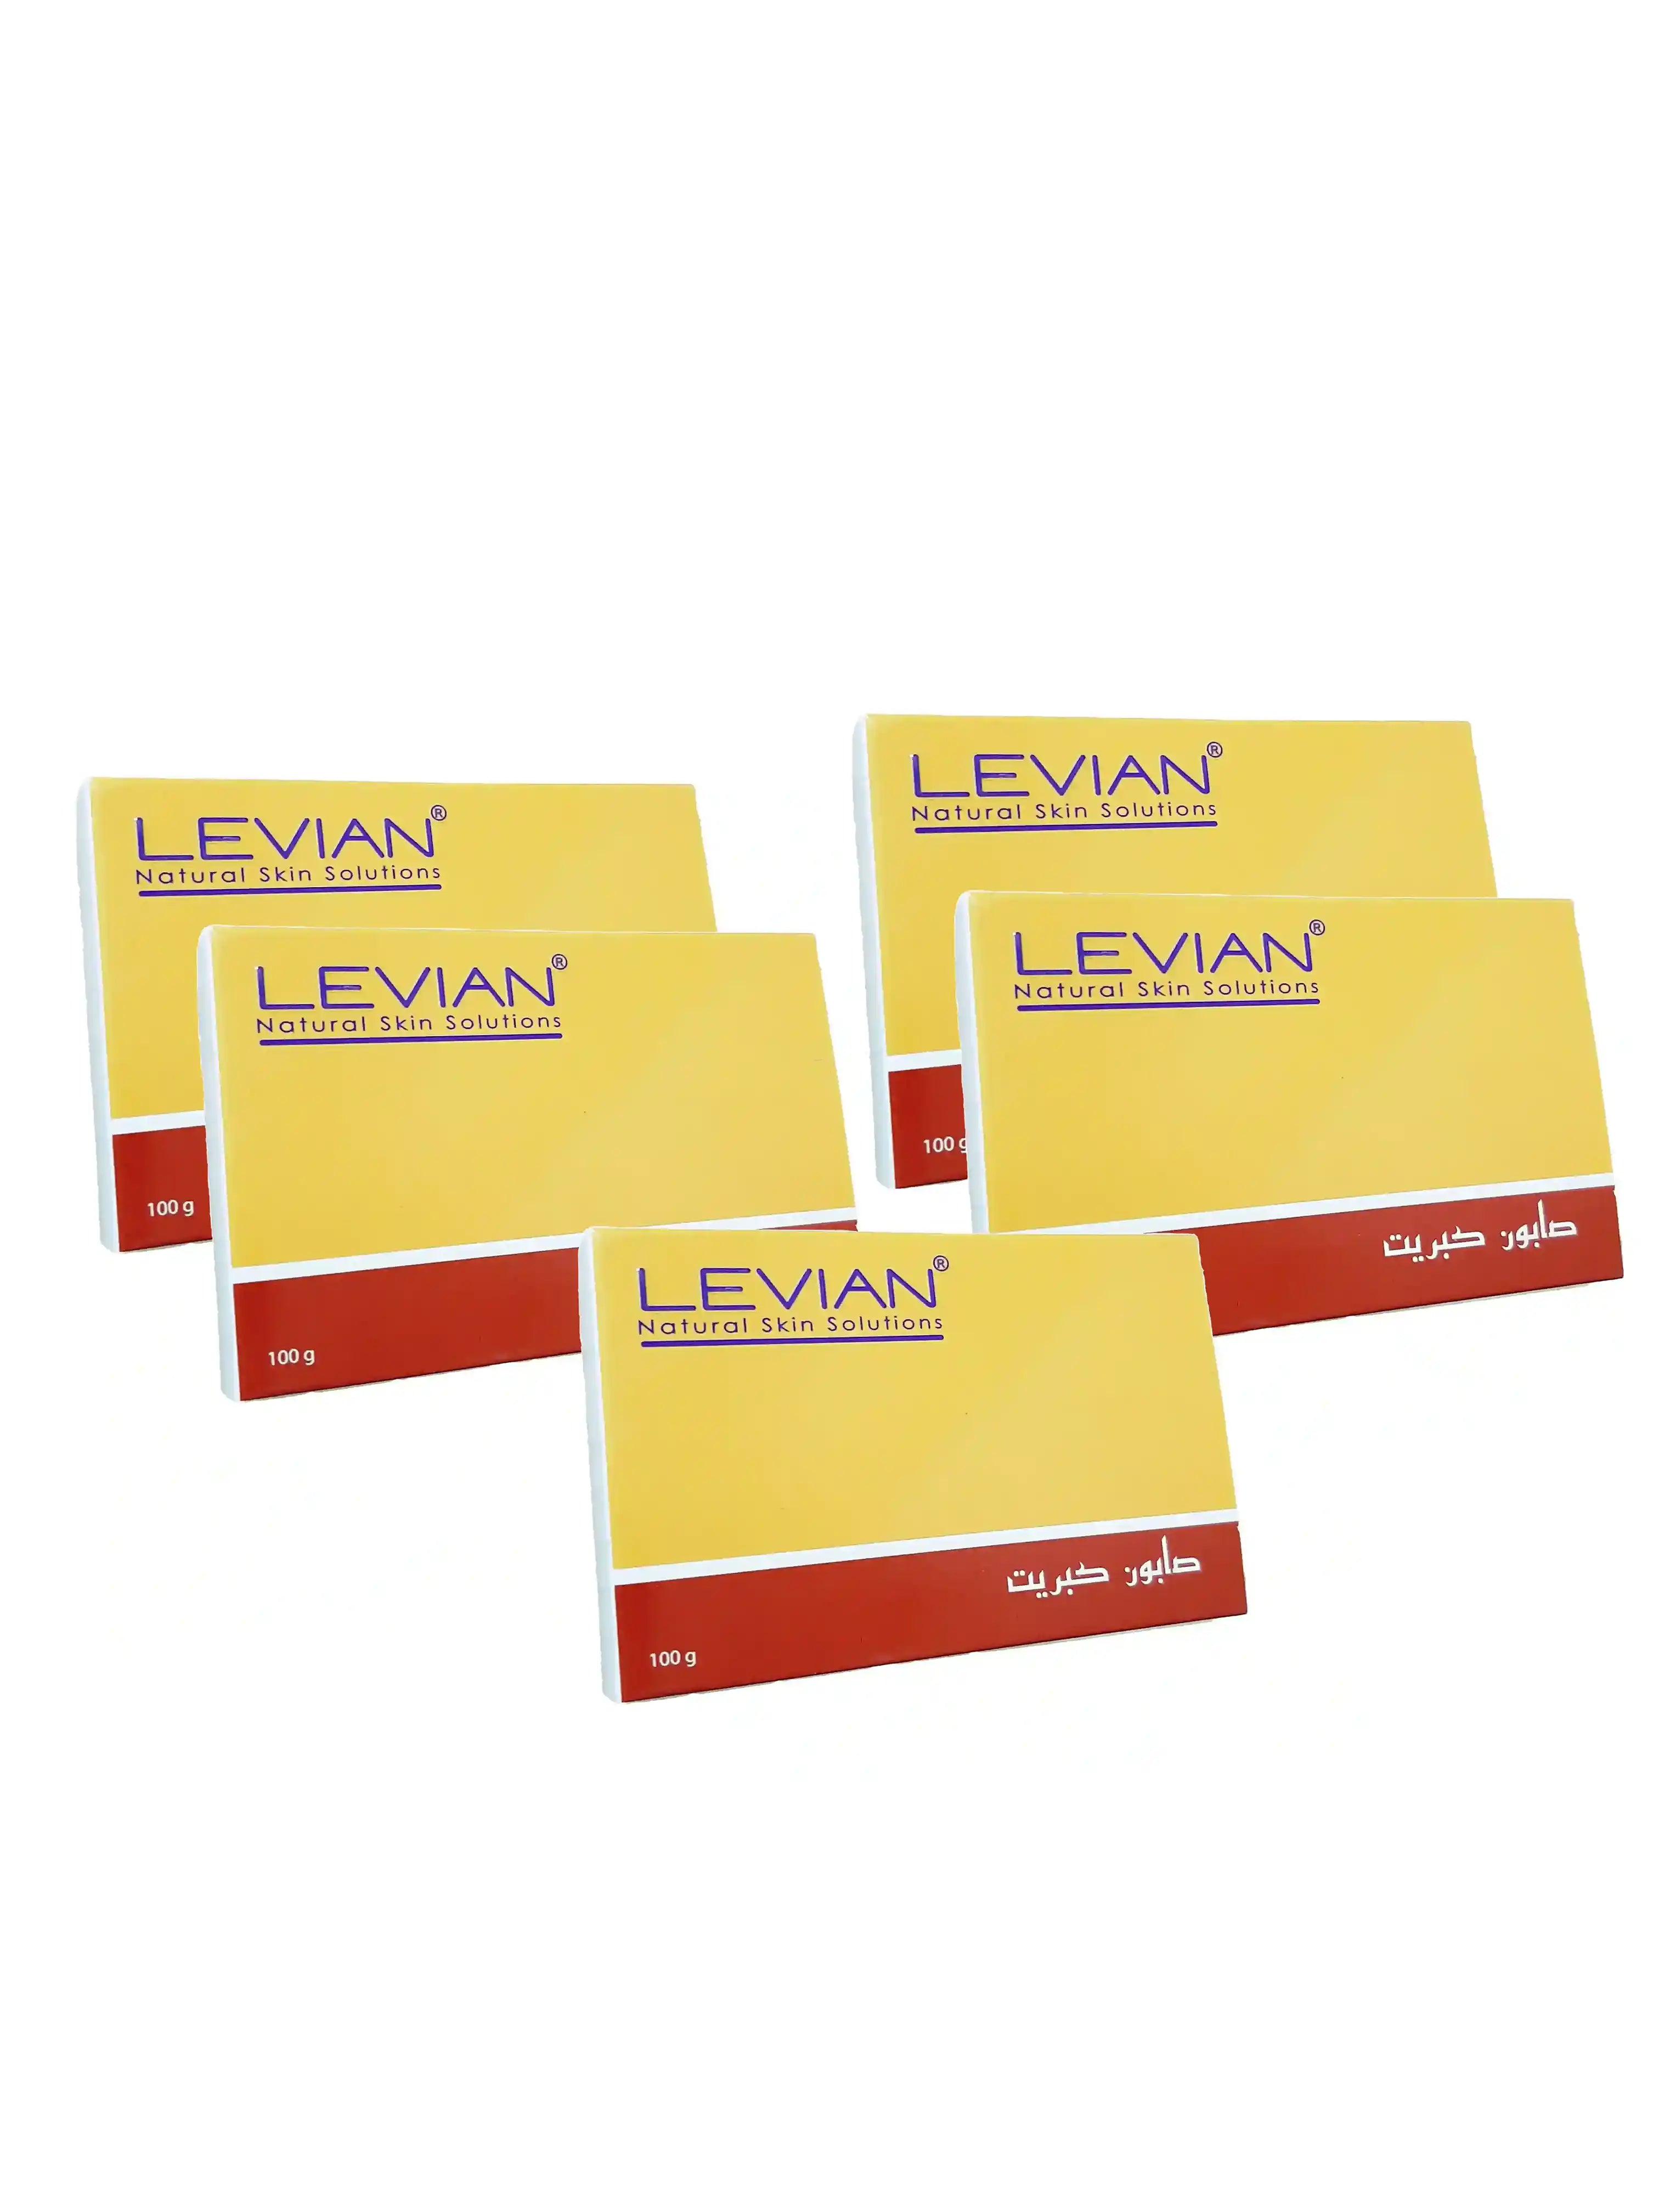 Levian sulfur soap